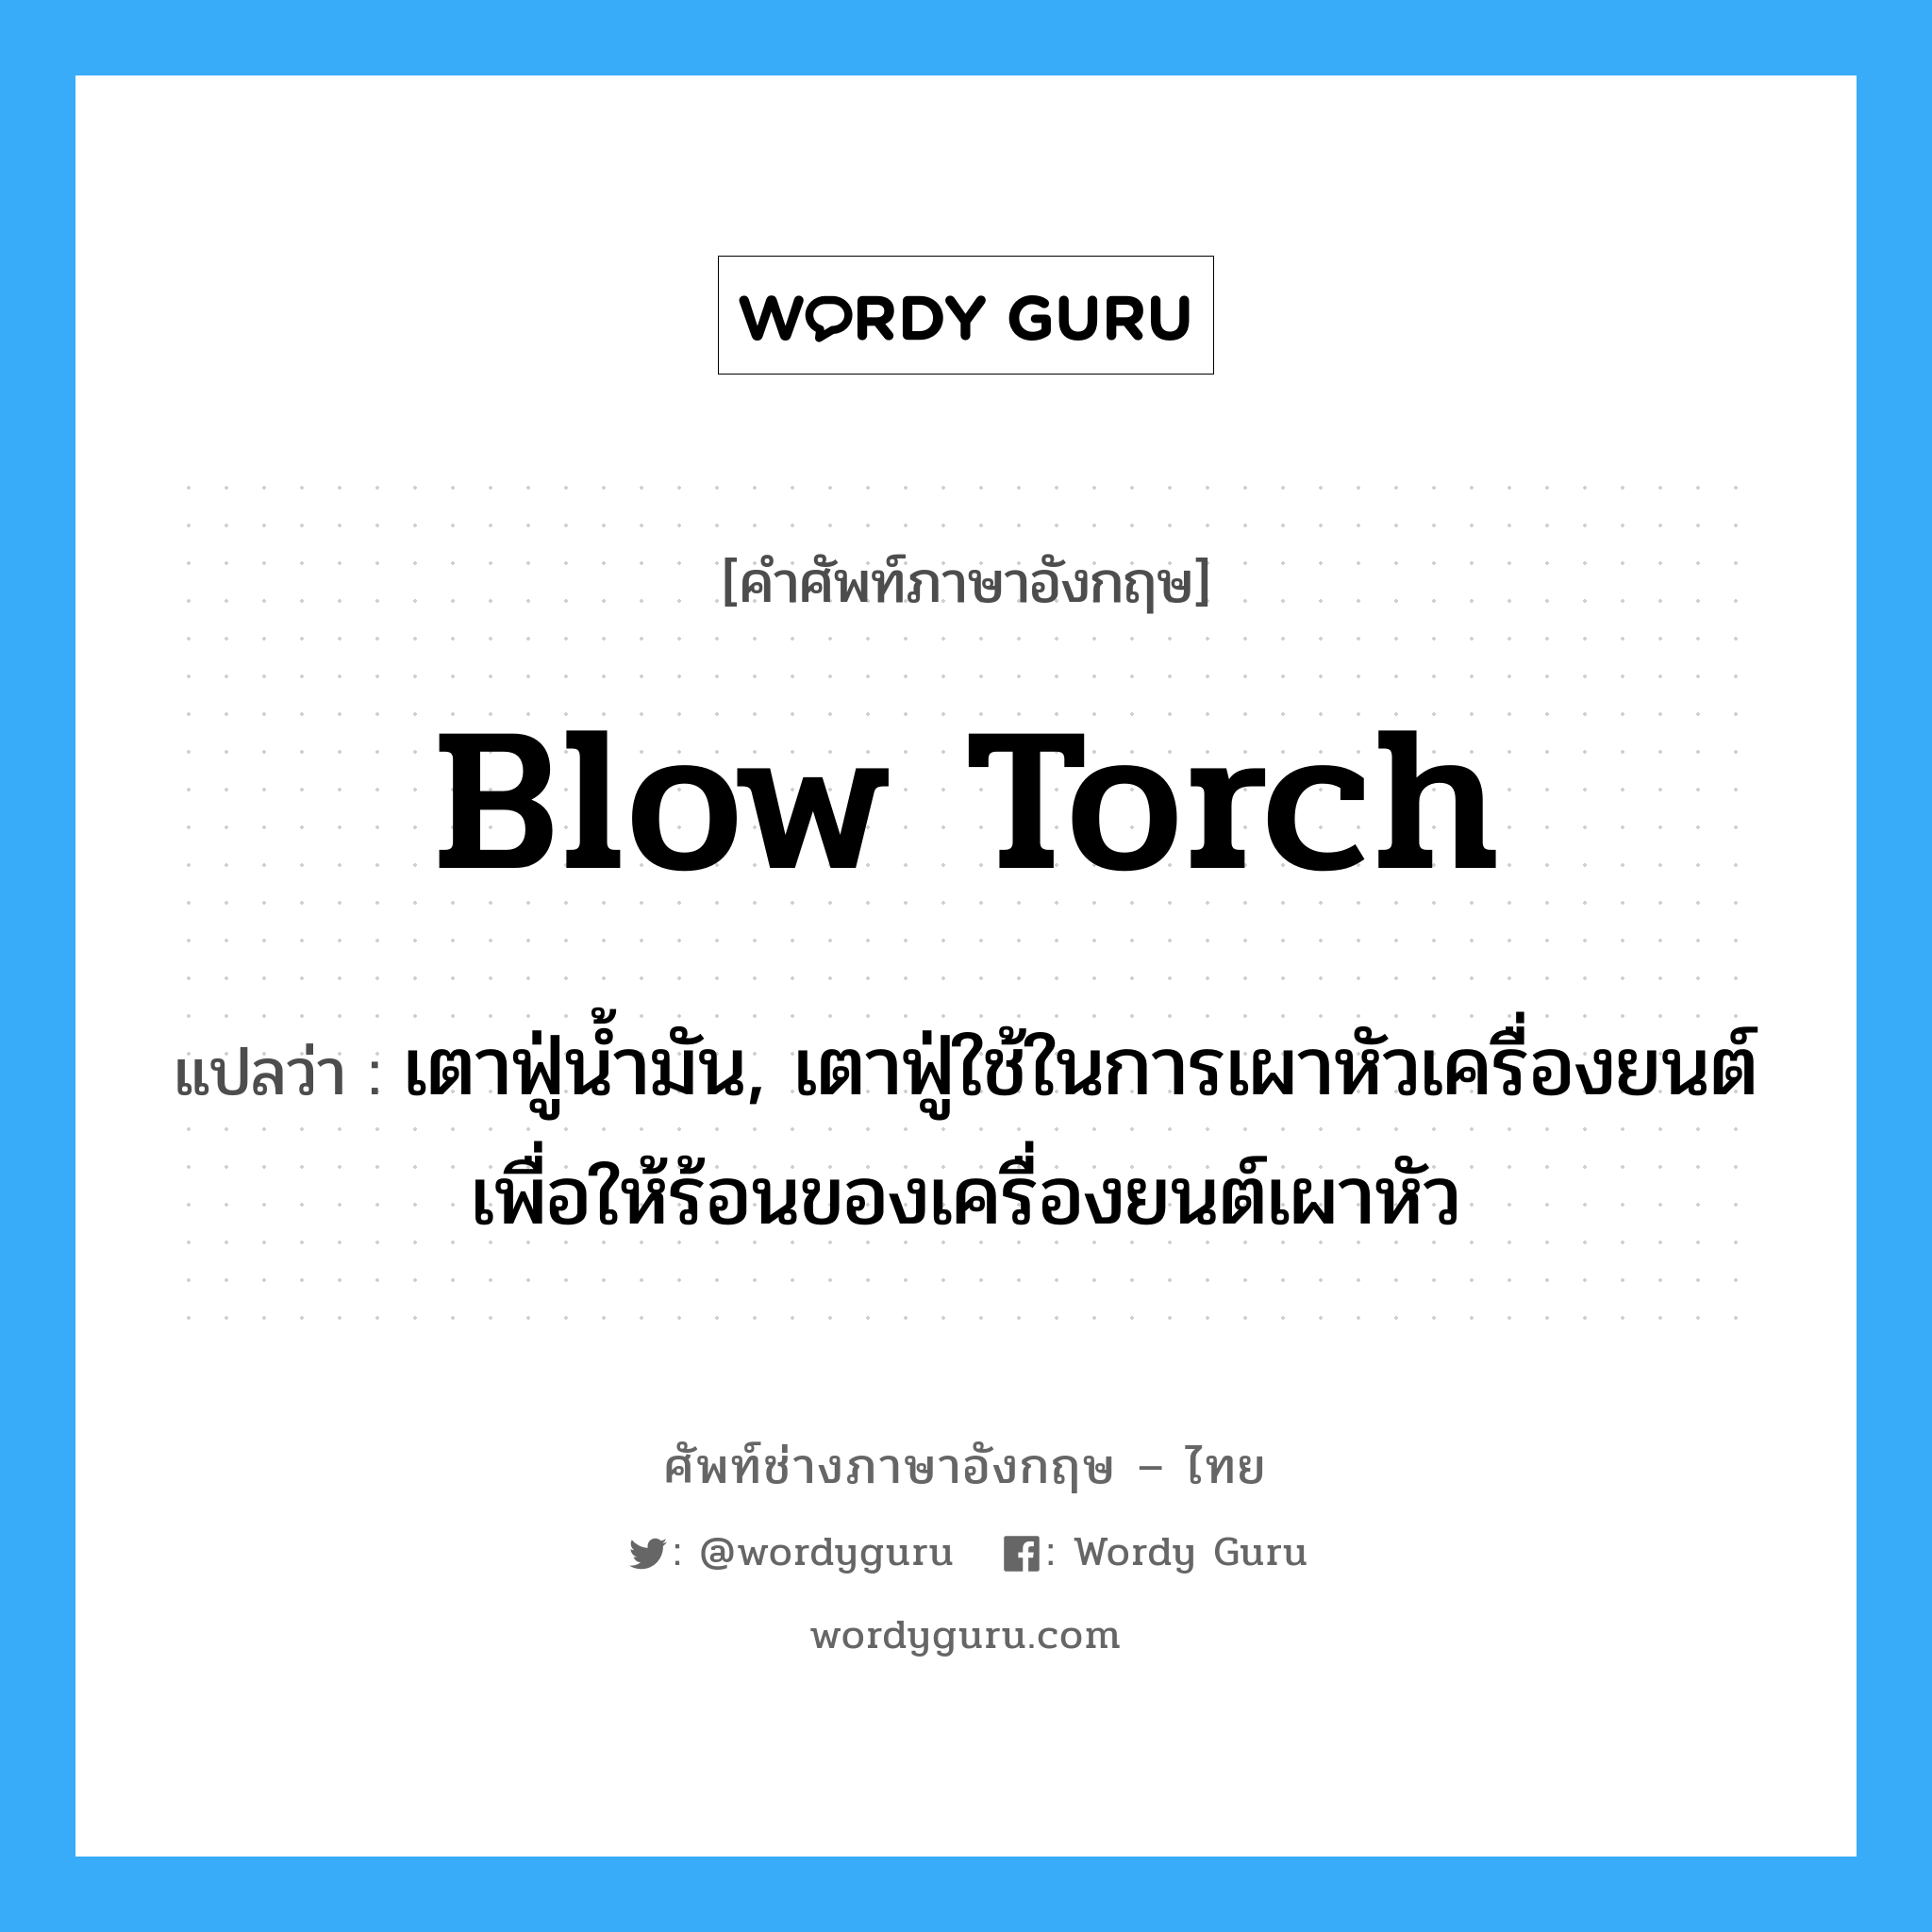 blow torch แปลว่า?, คำศัพท์ช่างภาษาอังกฤษ - ไทย blow torch คำศัพท์ภาษาอังกฤษ blow torch แปลว่า เตาฟู่น้ำมัน, เตาฟู่ใช้ในการเผาหัวเครื่องยนต์เพื่อให้ร้อนของเครื่องยนต์เผาหัว